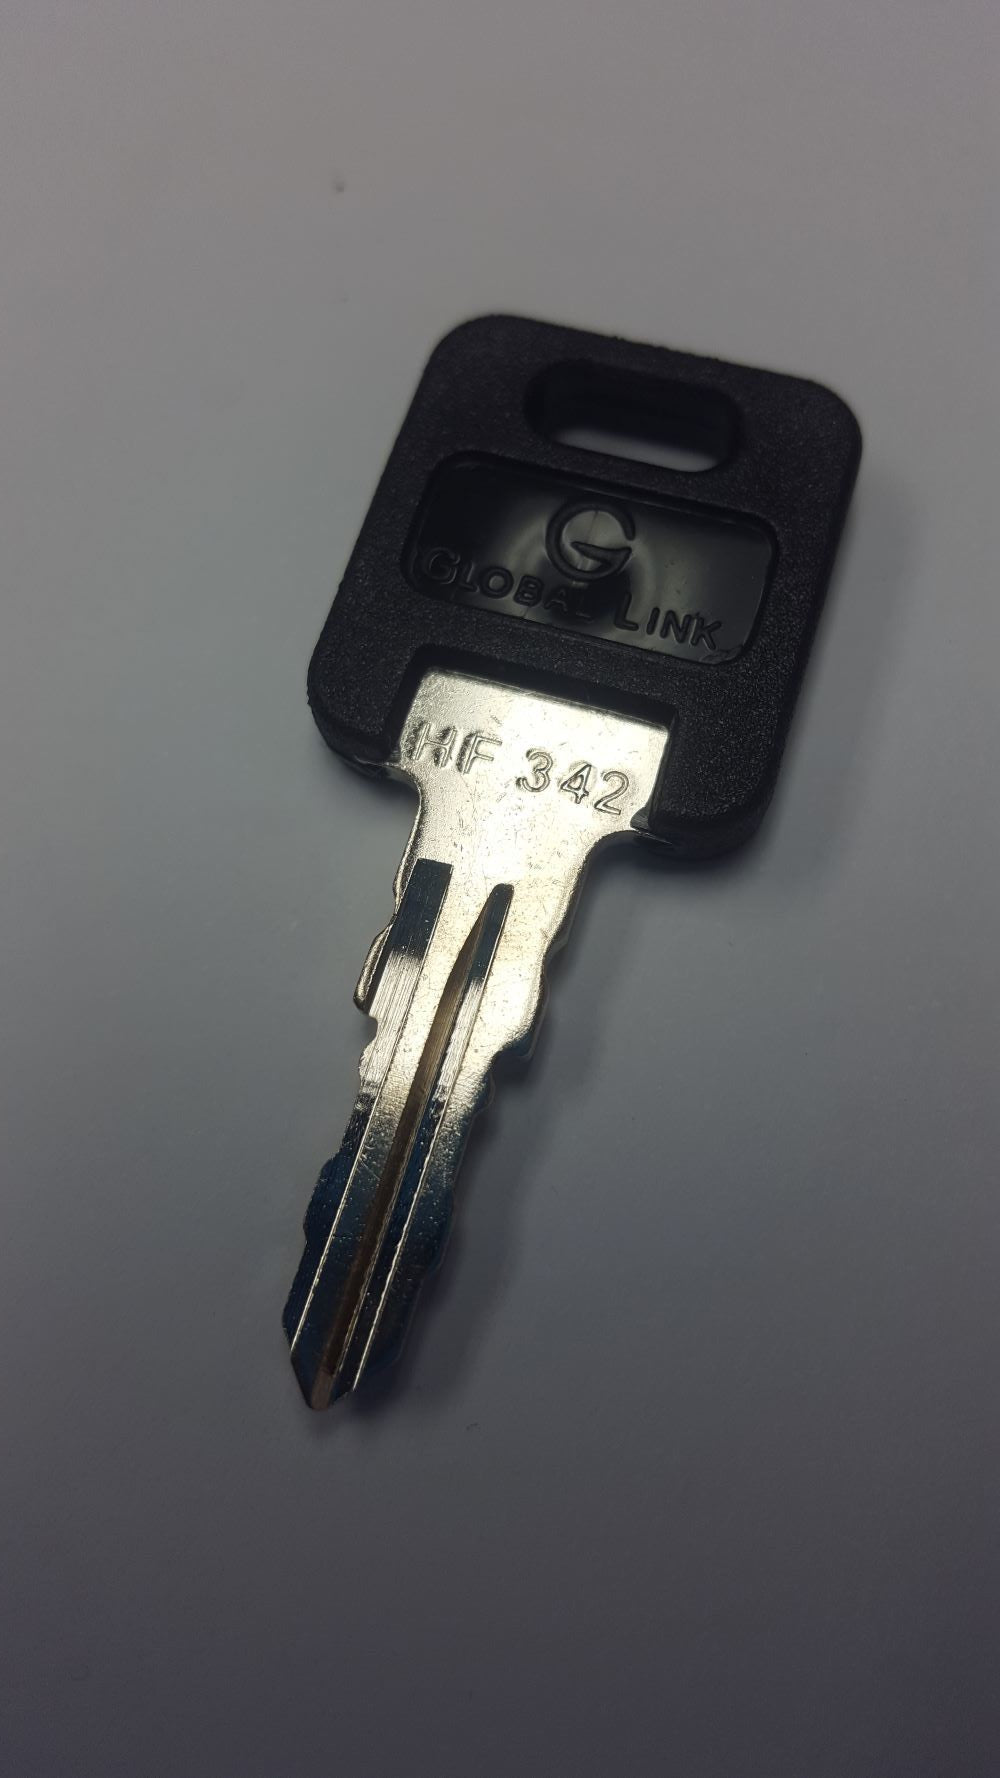 CPG KEY-HF-342 Pre-cut Stamped FIC Replacemnt HF342 Key